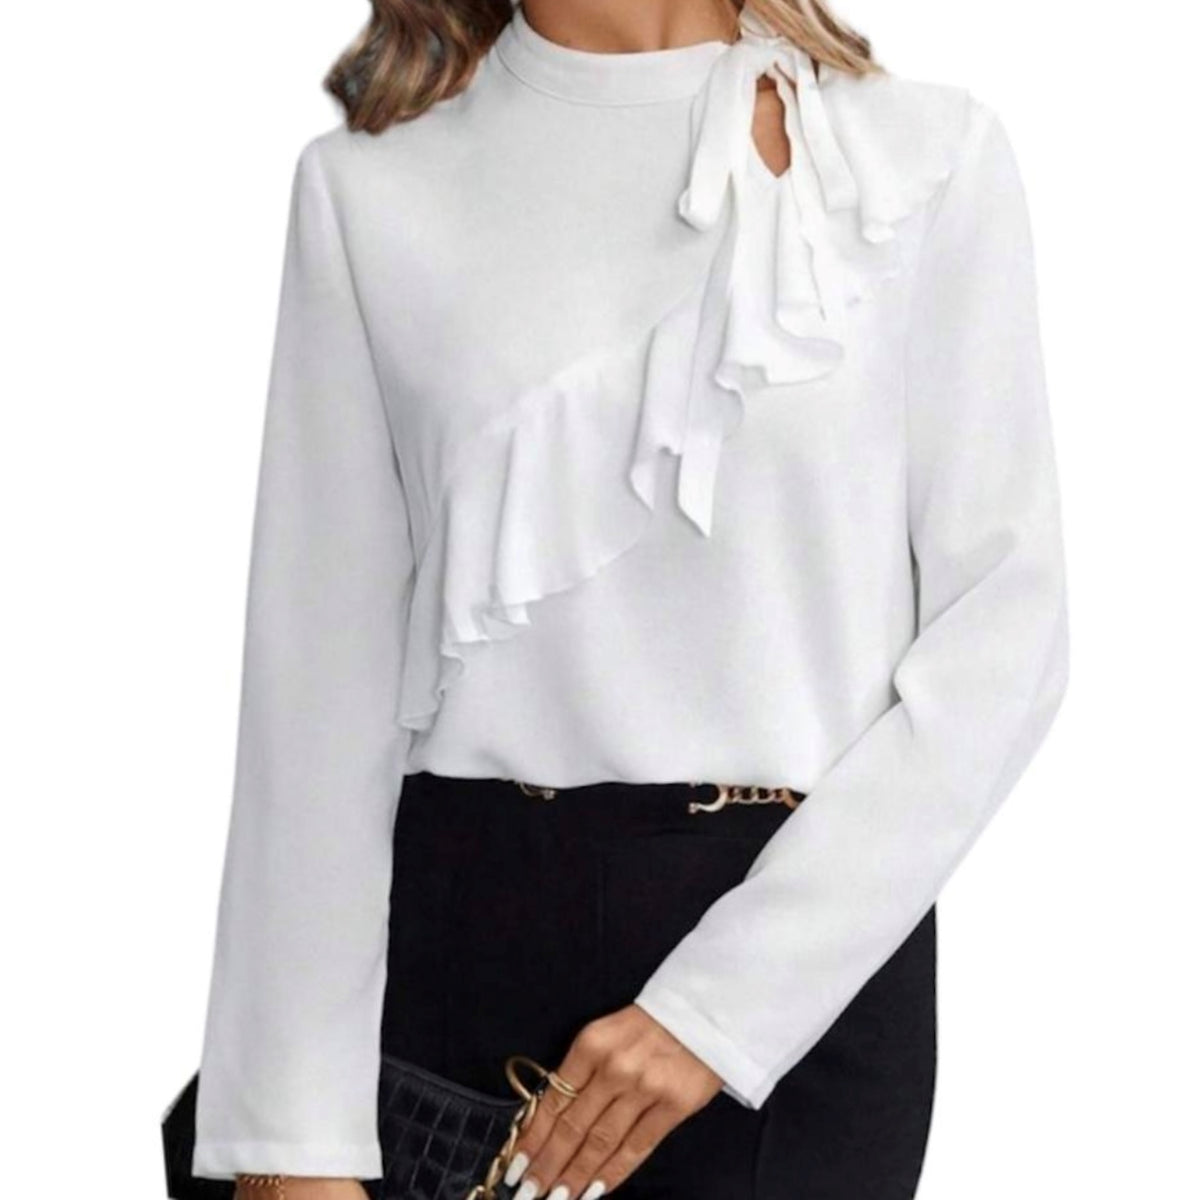 Marquez votre style avec la blouse blanche avec volant de la marque C'est Elle. Avec sa boucle élégante sur le côté du cou, cette blouse vous offre une allure sophistiquée. Complétez votre garde-robe avec cette pièce intemporelle et ajoutez une touche de classe à vos tenues du quotidien.